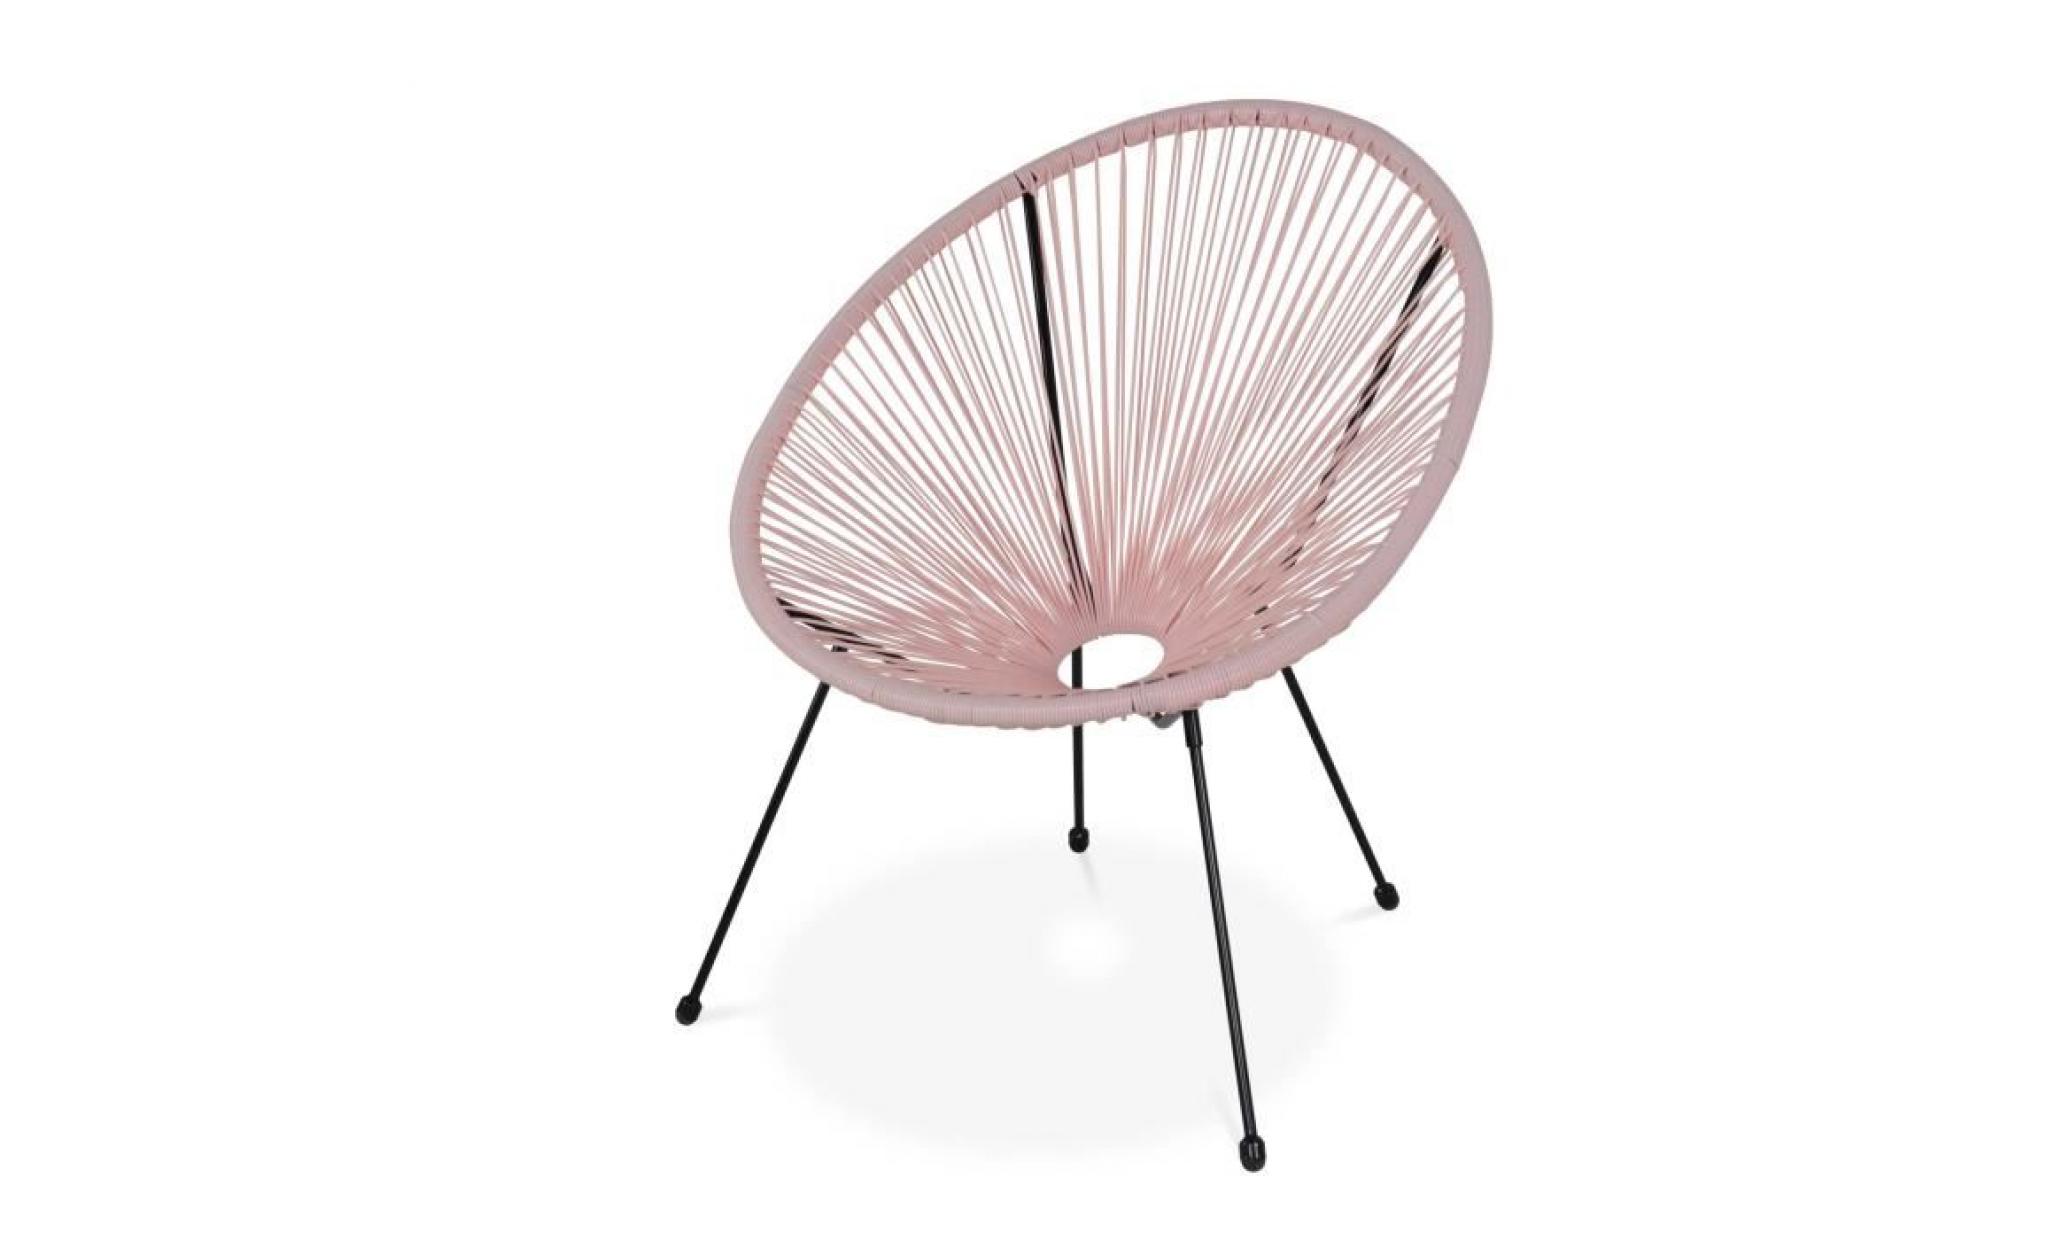 fauteuil acapulco forme d'oeuf   rose pale   fauteuil 4 pieds design rétro, cordage plastique, intérieur / extérieur